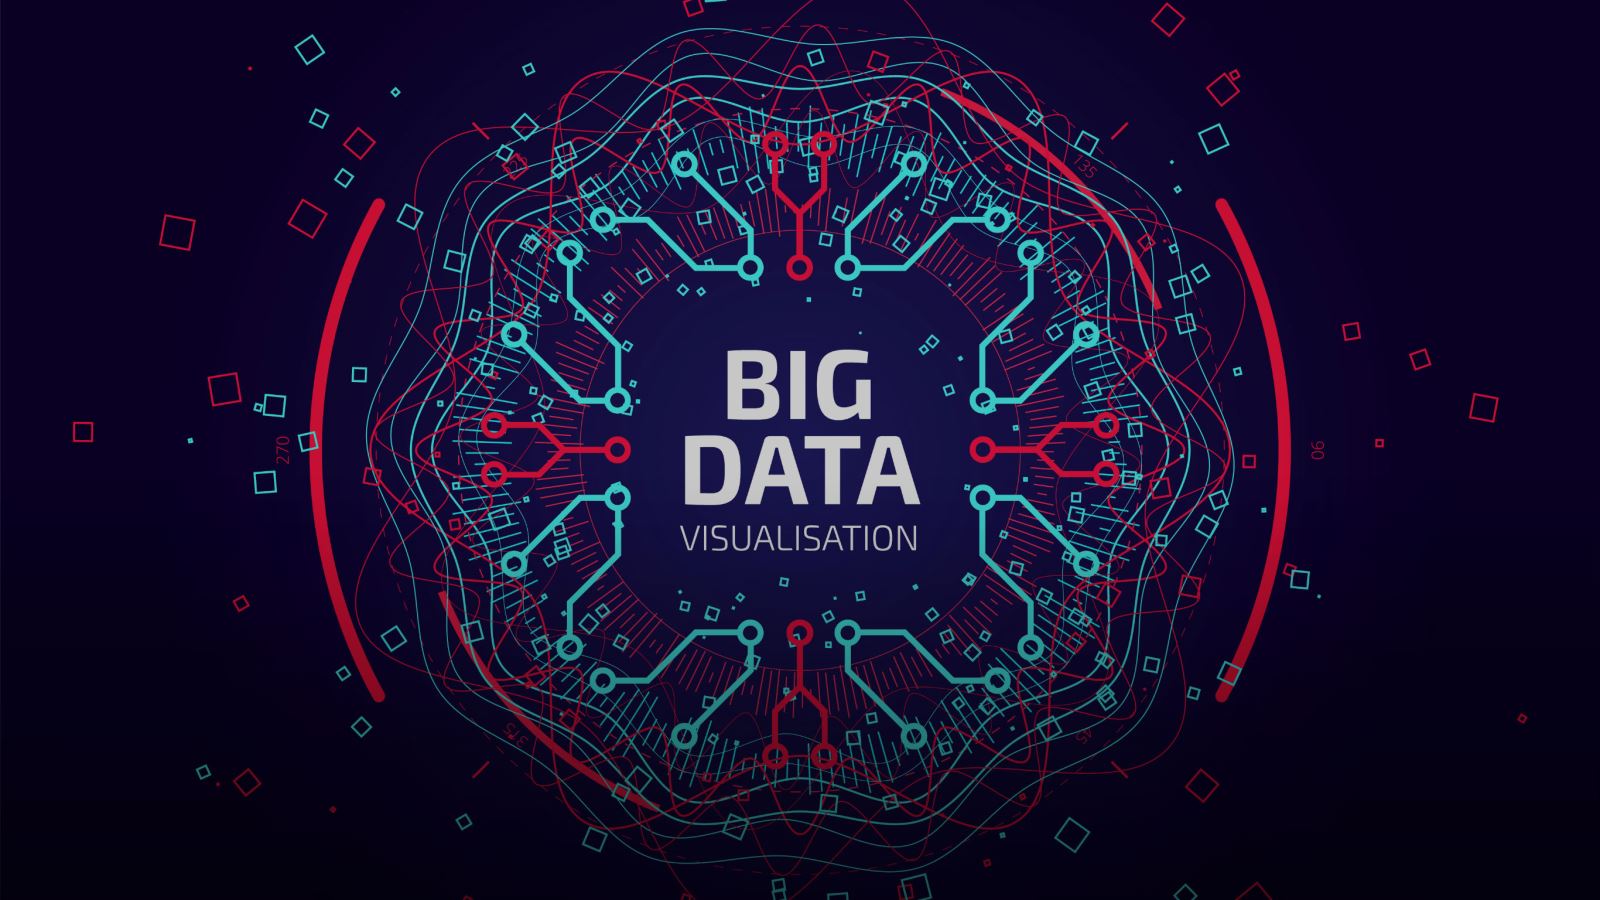 Big data là gì?